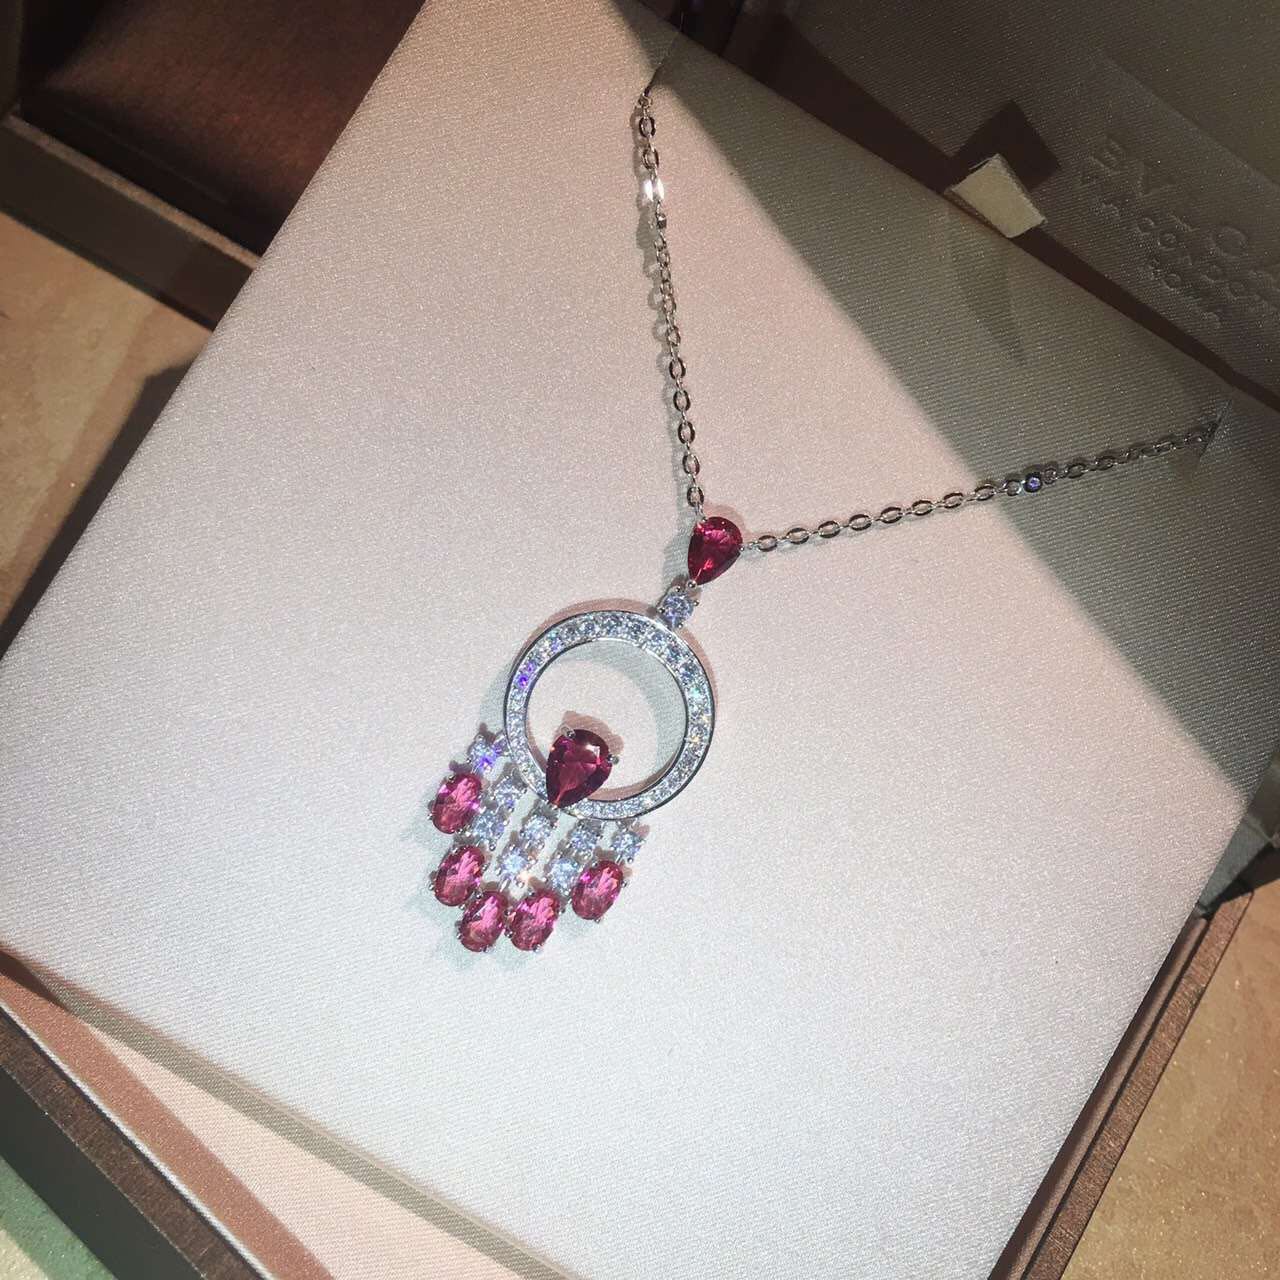 欧美大牌时尚纯银s925项链红宝石微镶高碳钻气质锁骨链送女友礼物